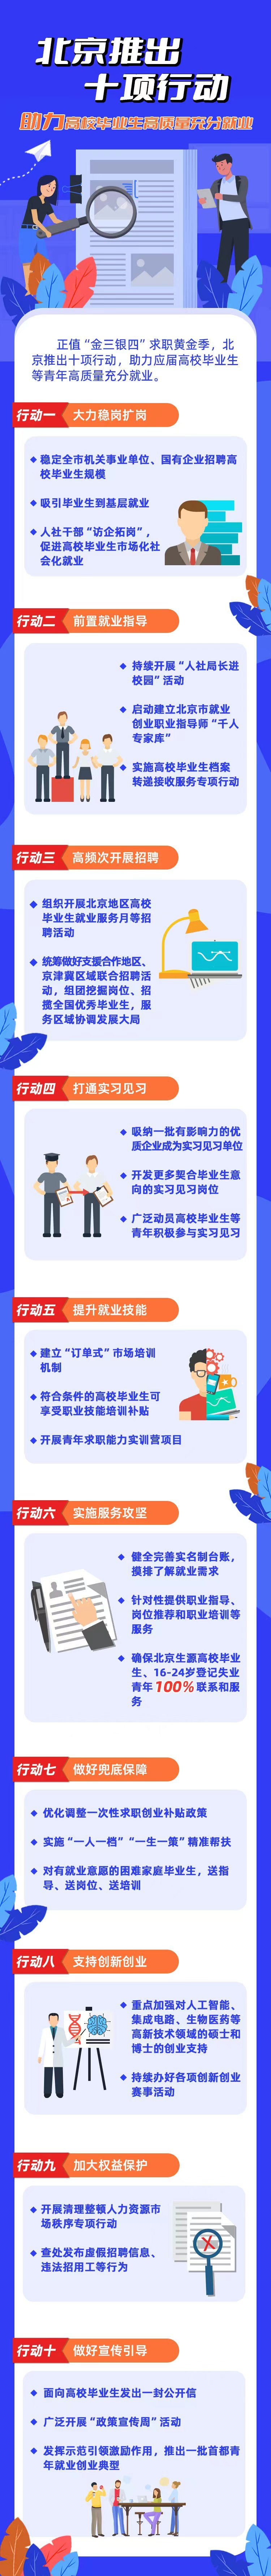 助力高校毕业生就业 北京推出十项行动